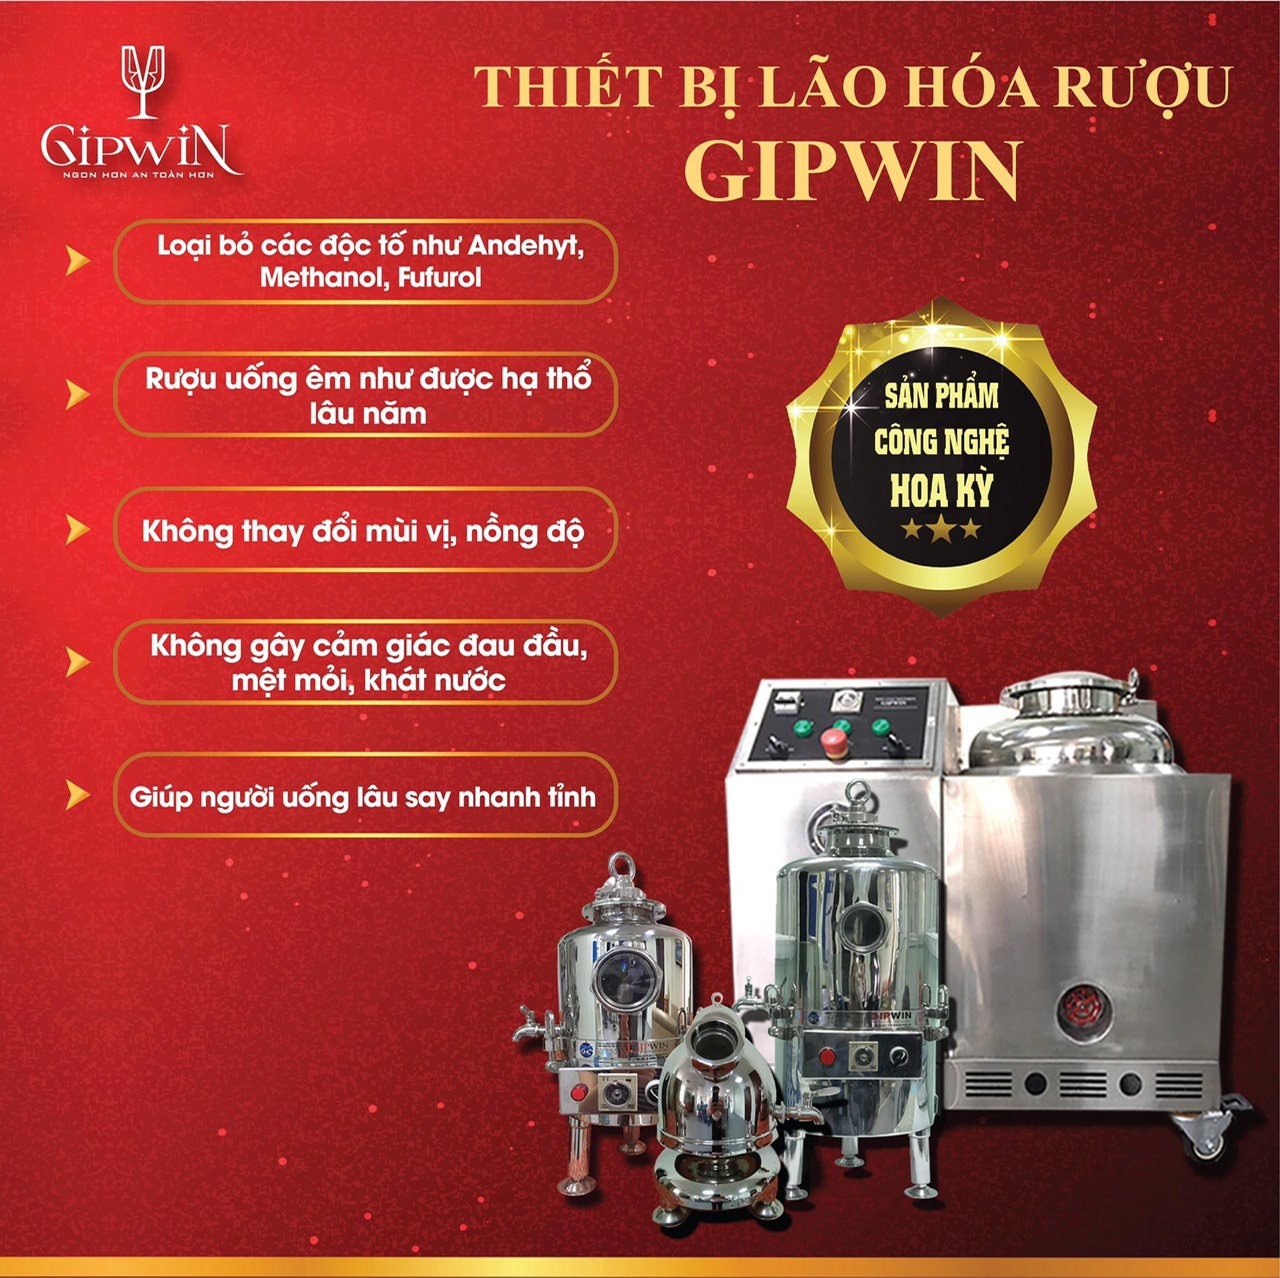 Máy lão hóa rượu Gipwin sản phẩm được nhiều doanh nghiệp, người tiêu dùng ưa chuộng.